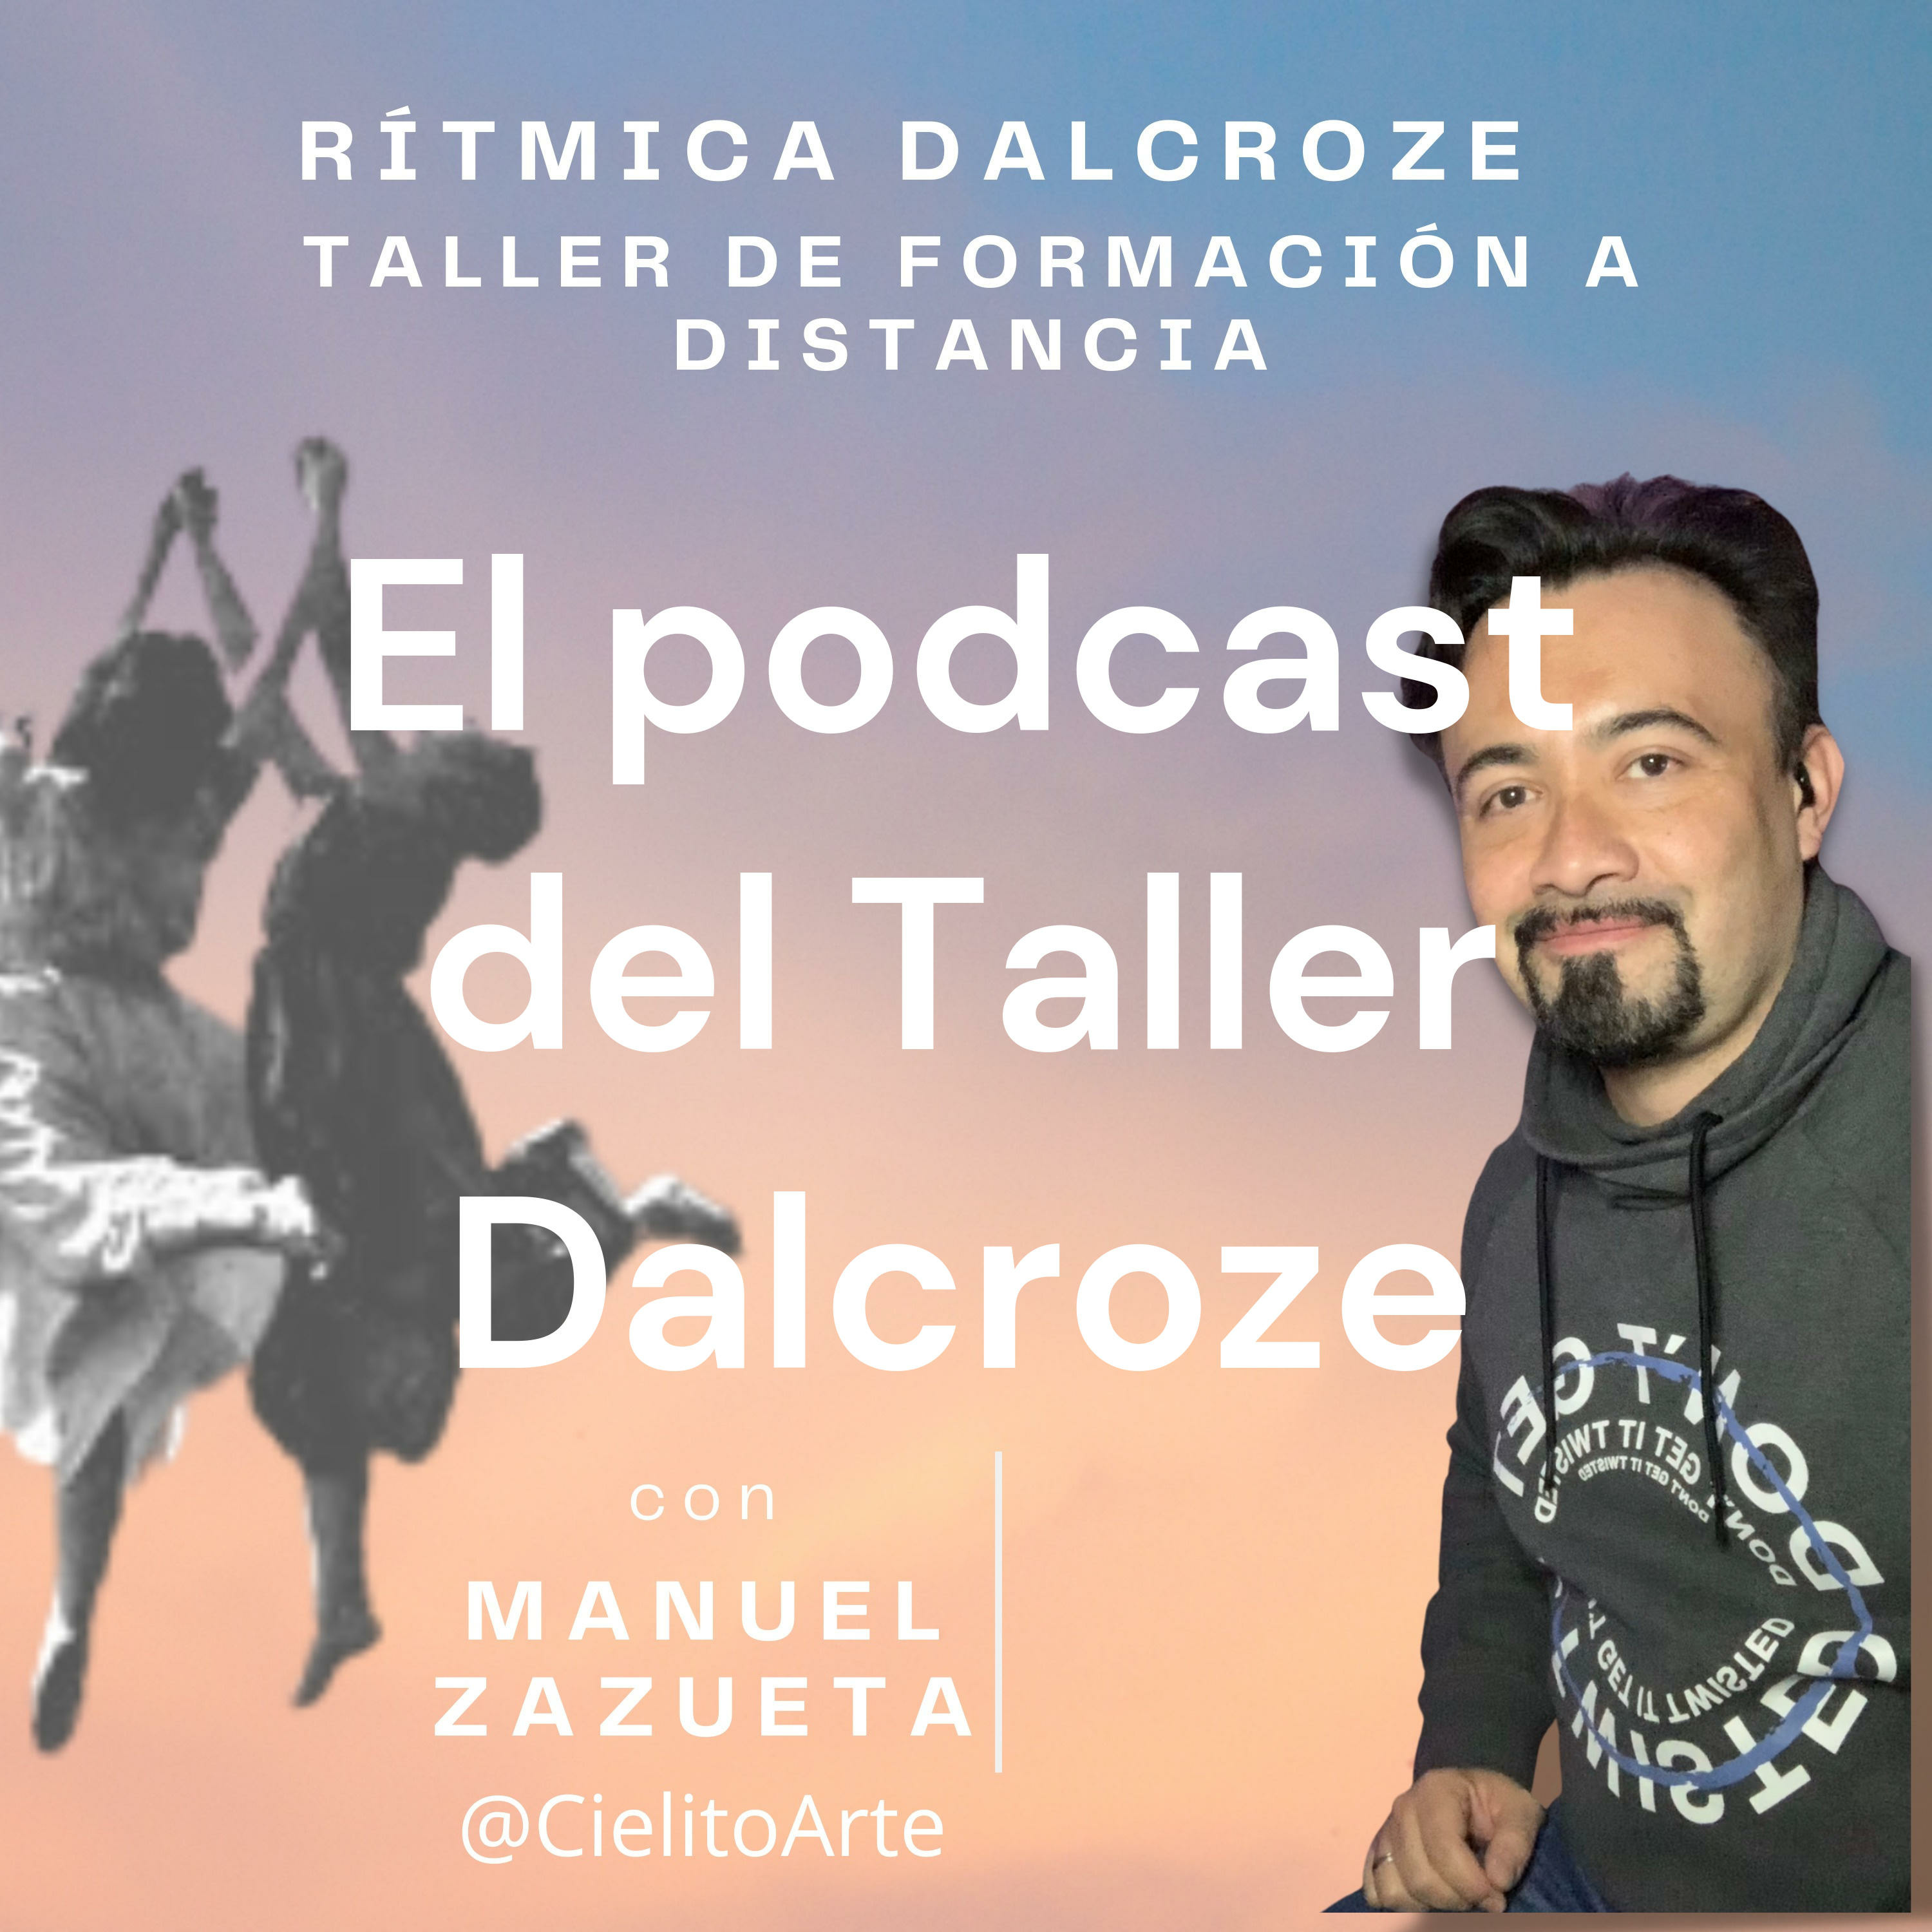 El podcast del Taller Dalcroze